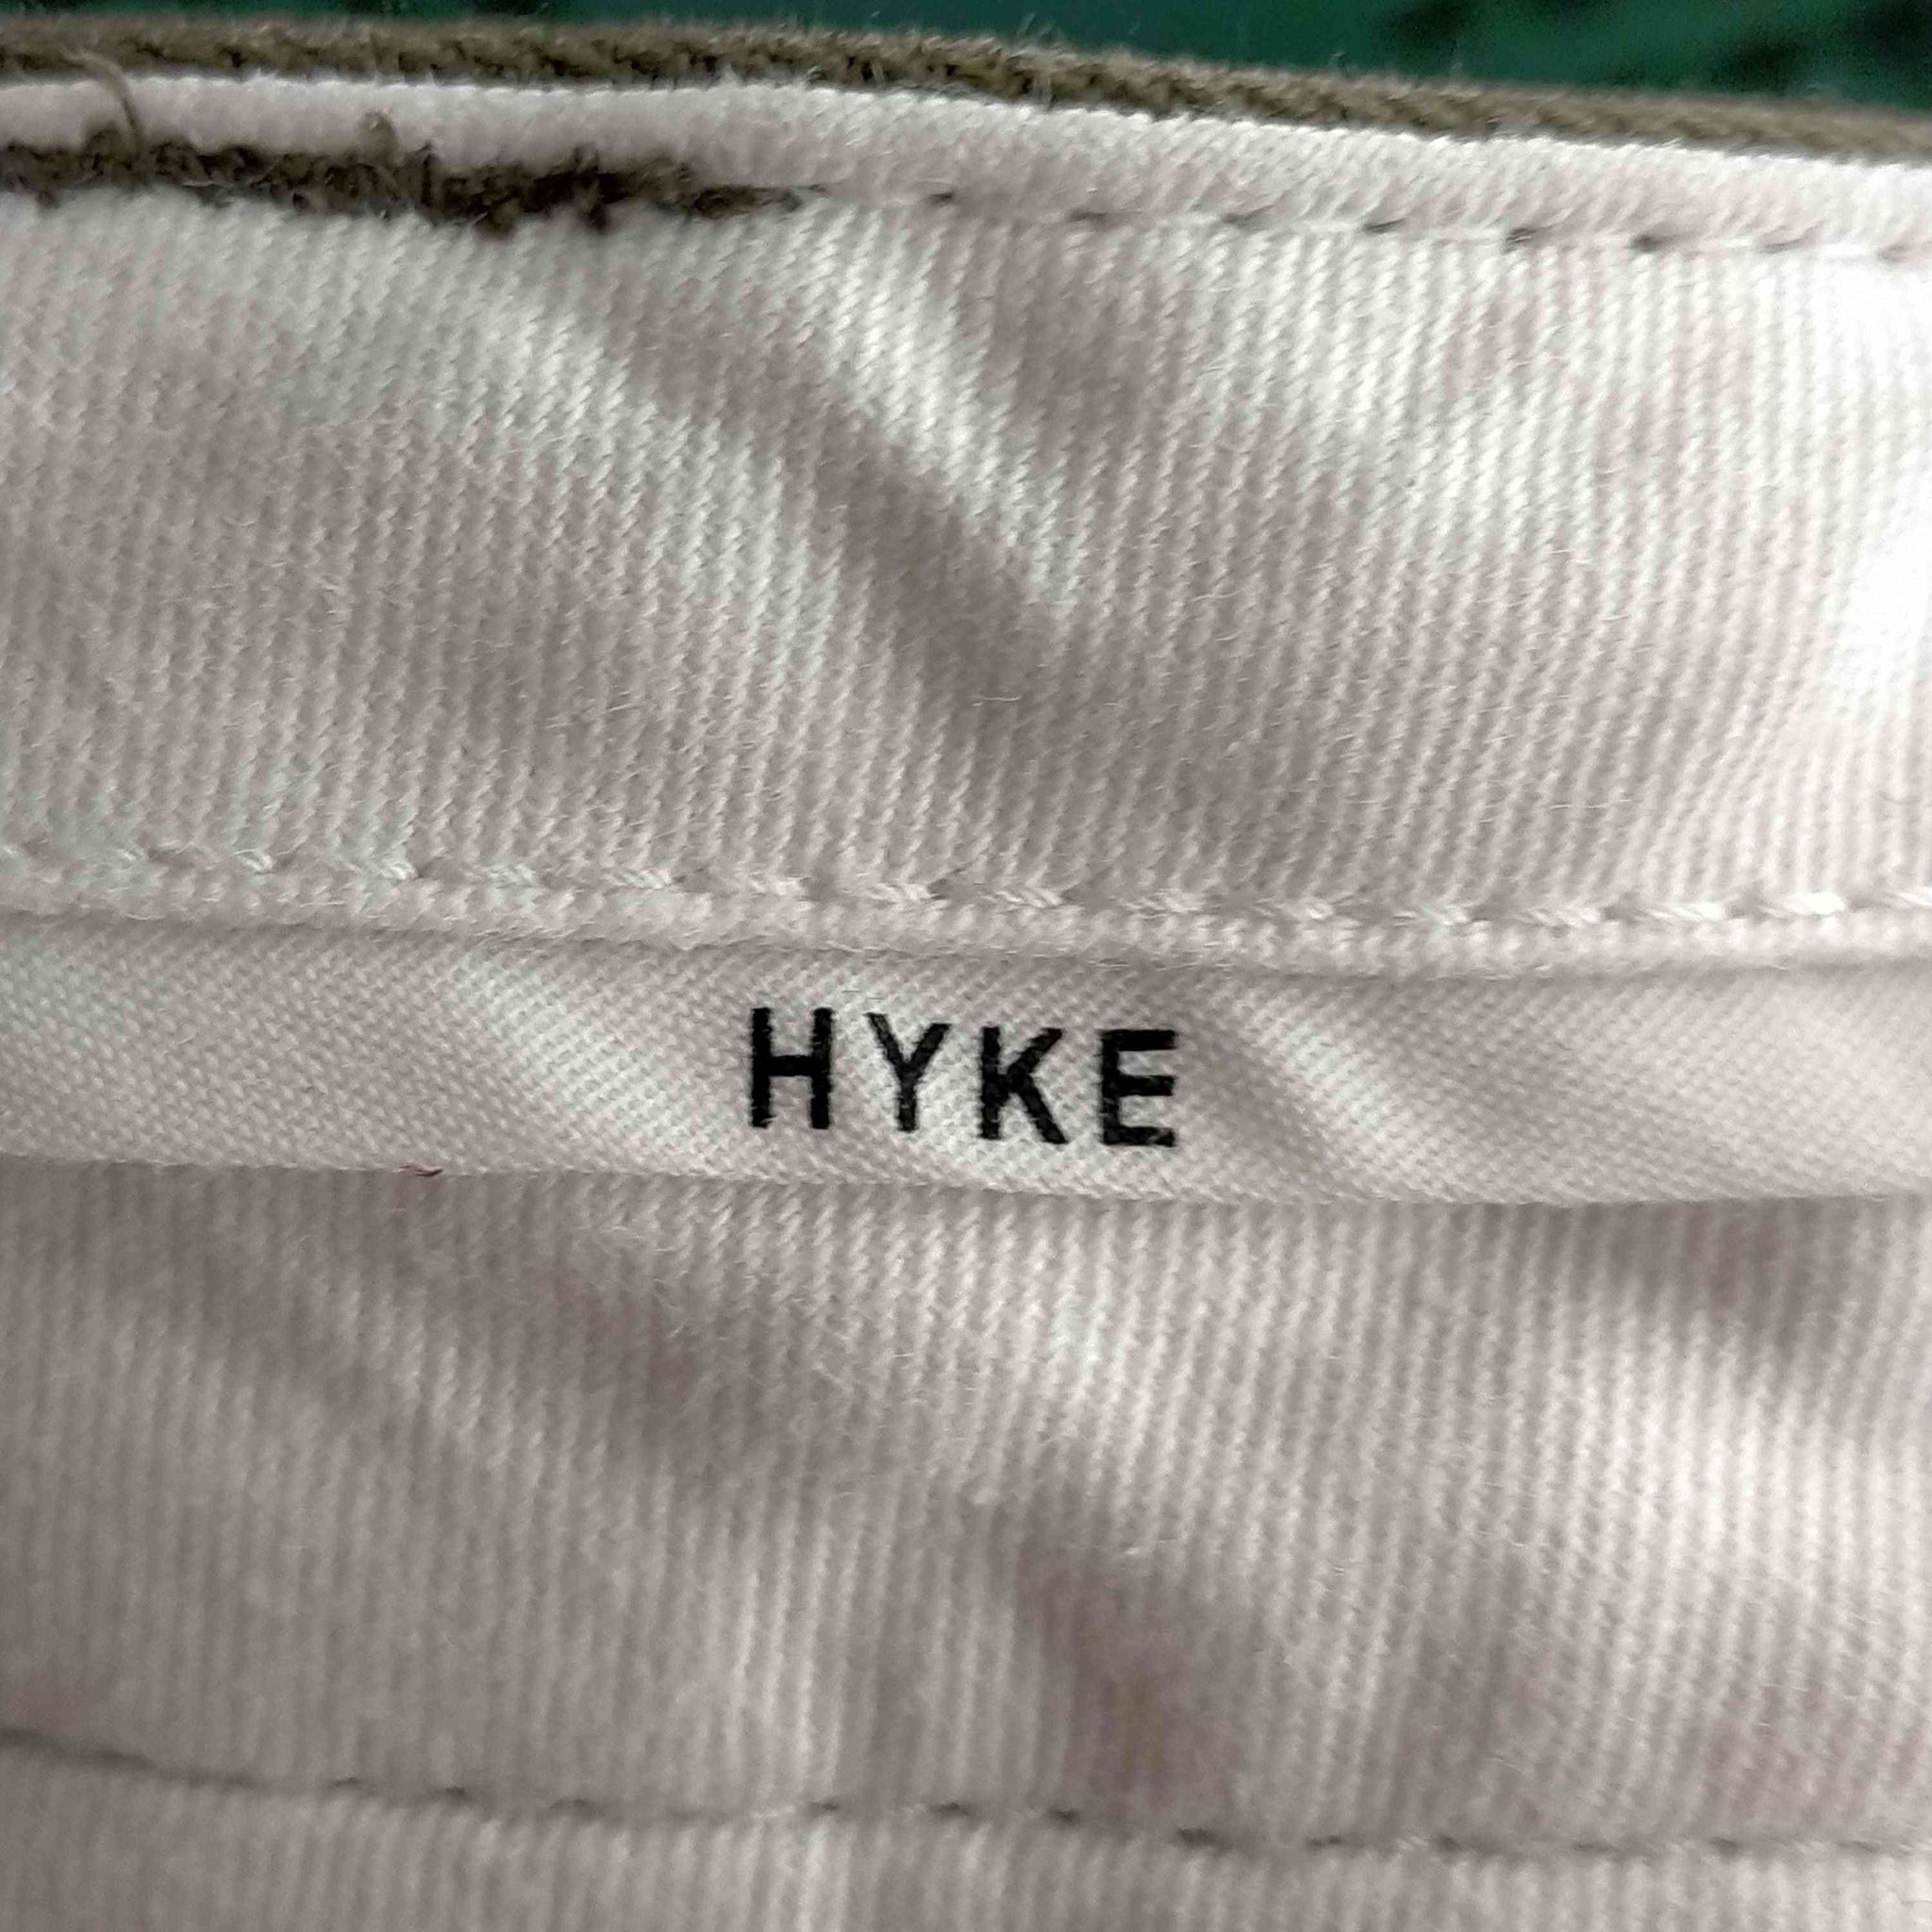 HYKE(ハイク)スリムフィットパンツ